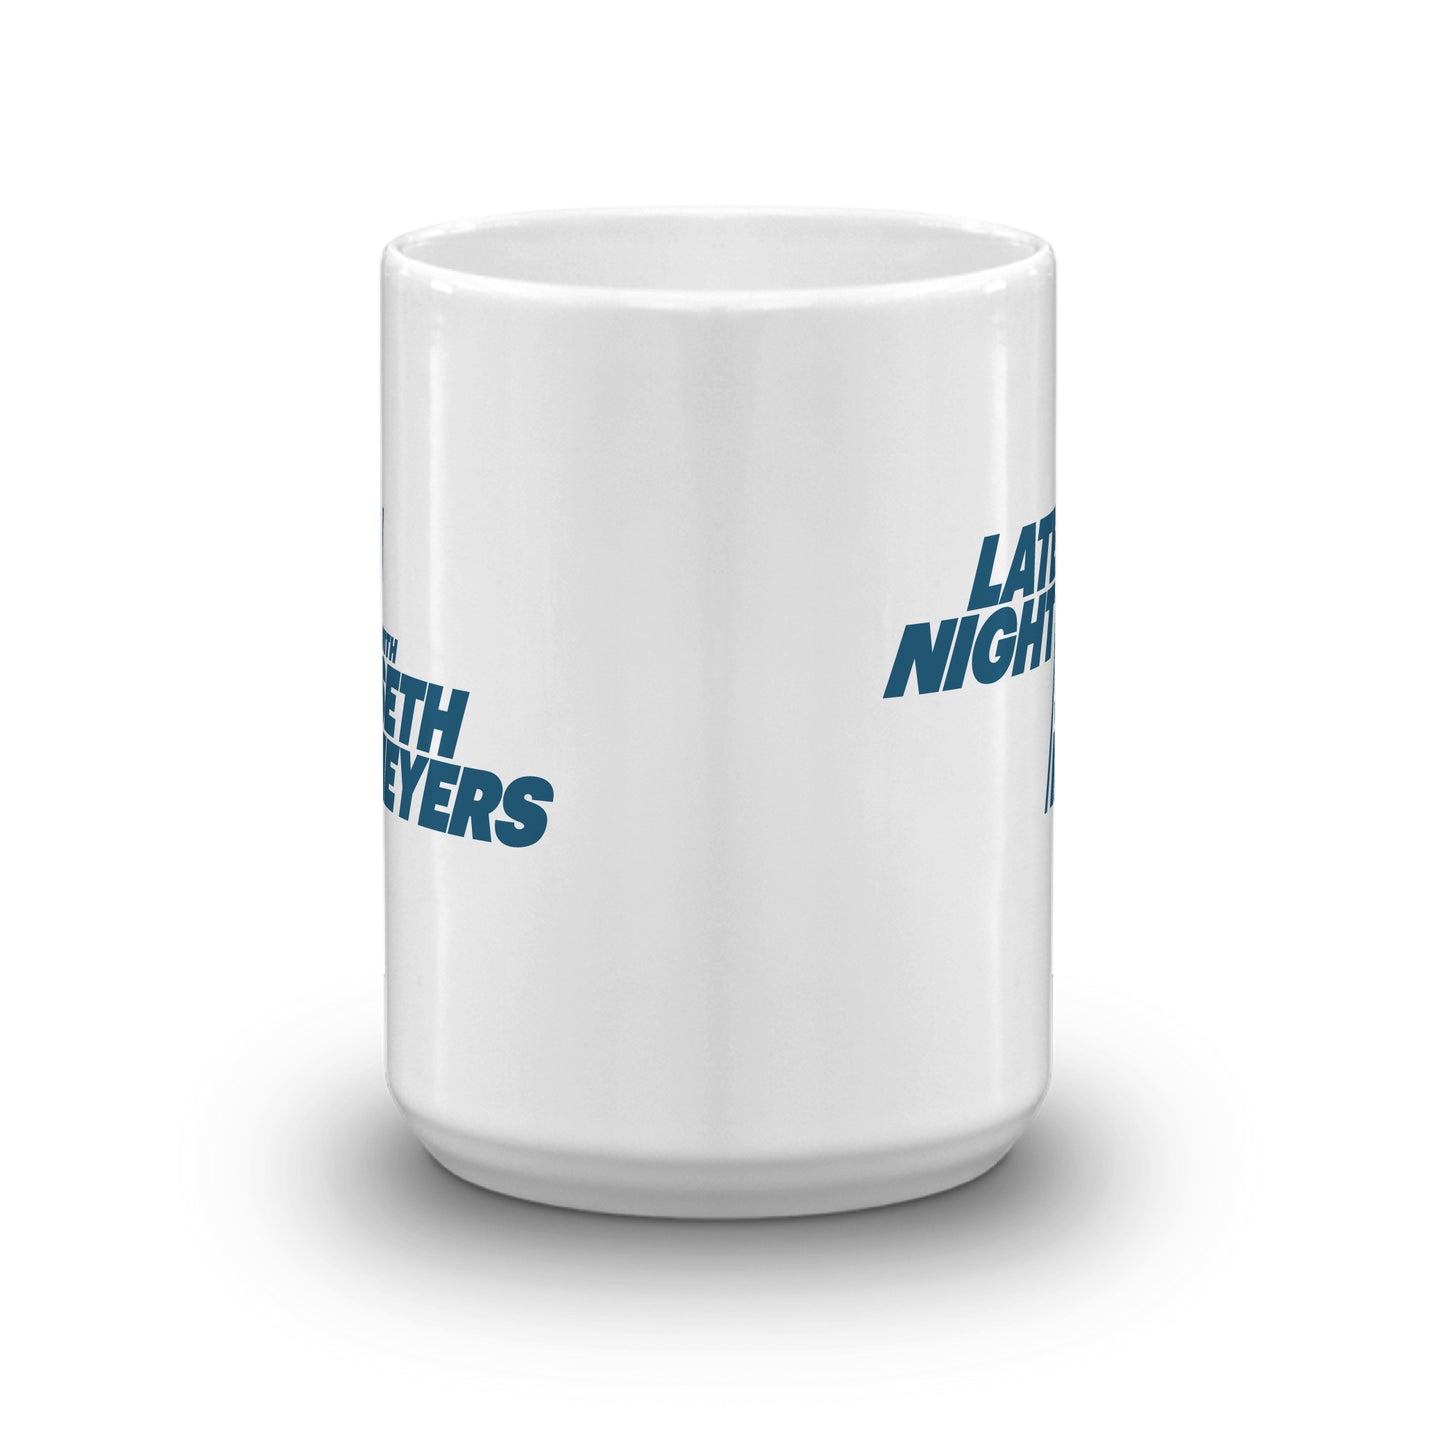 Late Night With Seth Meyers 15 oz White Mug